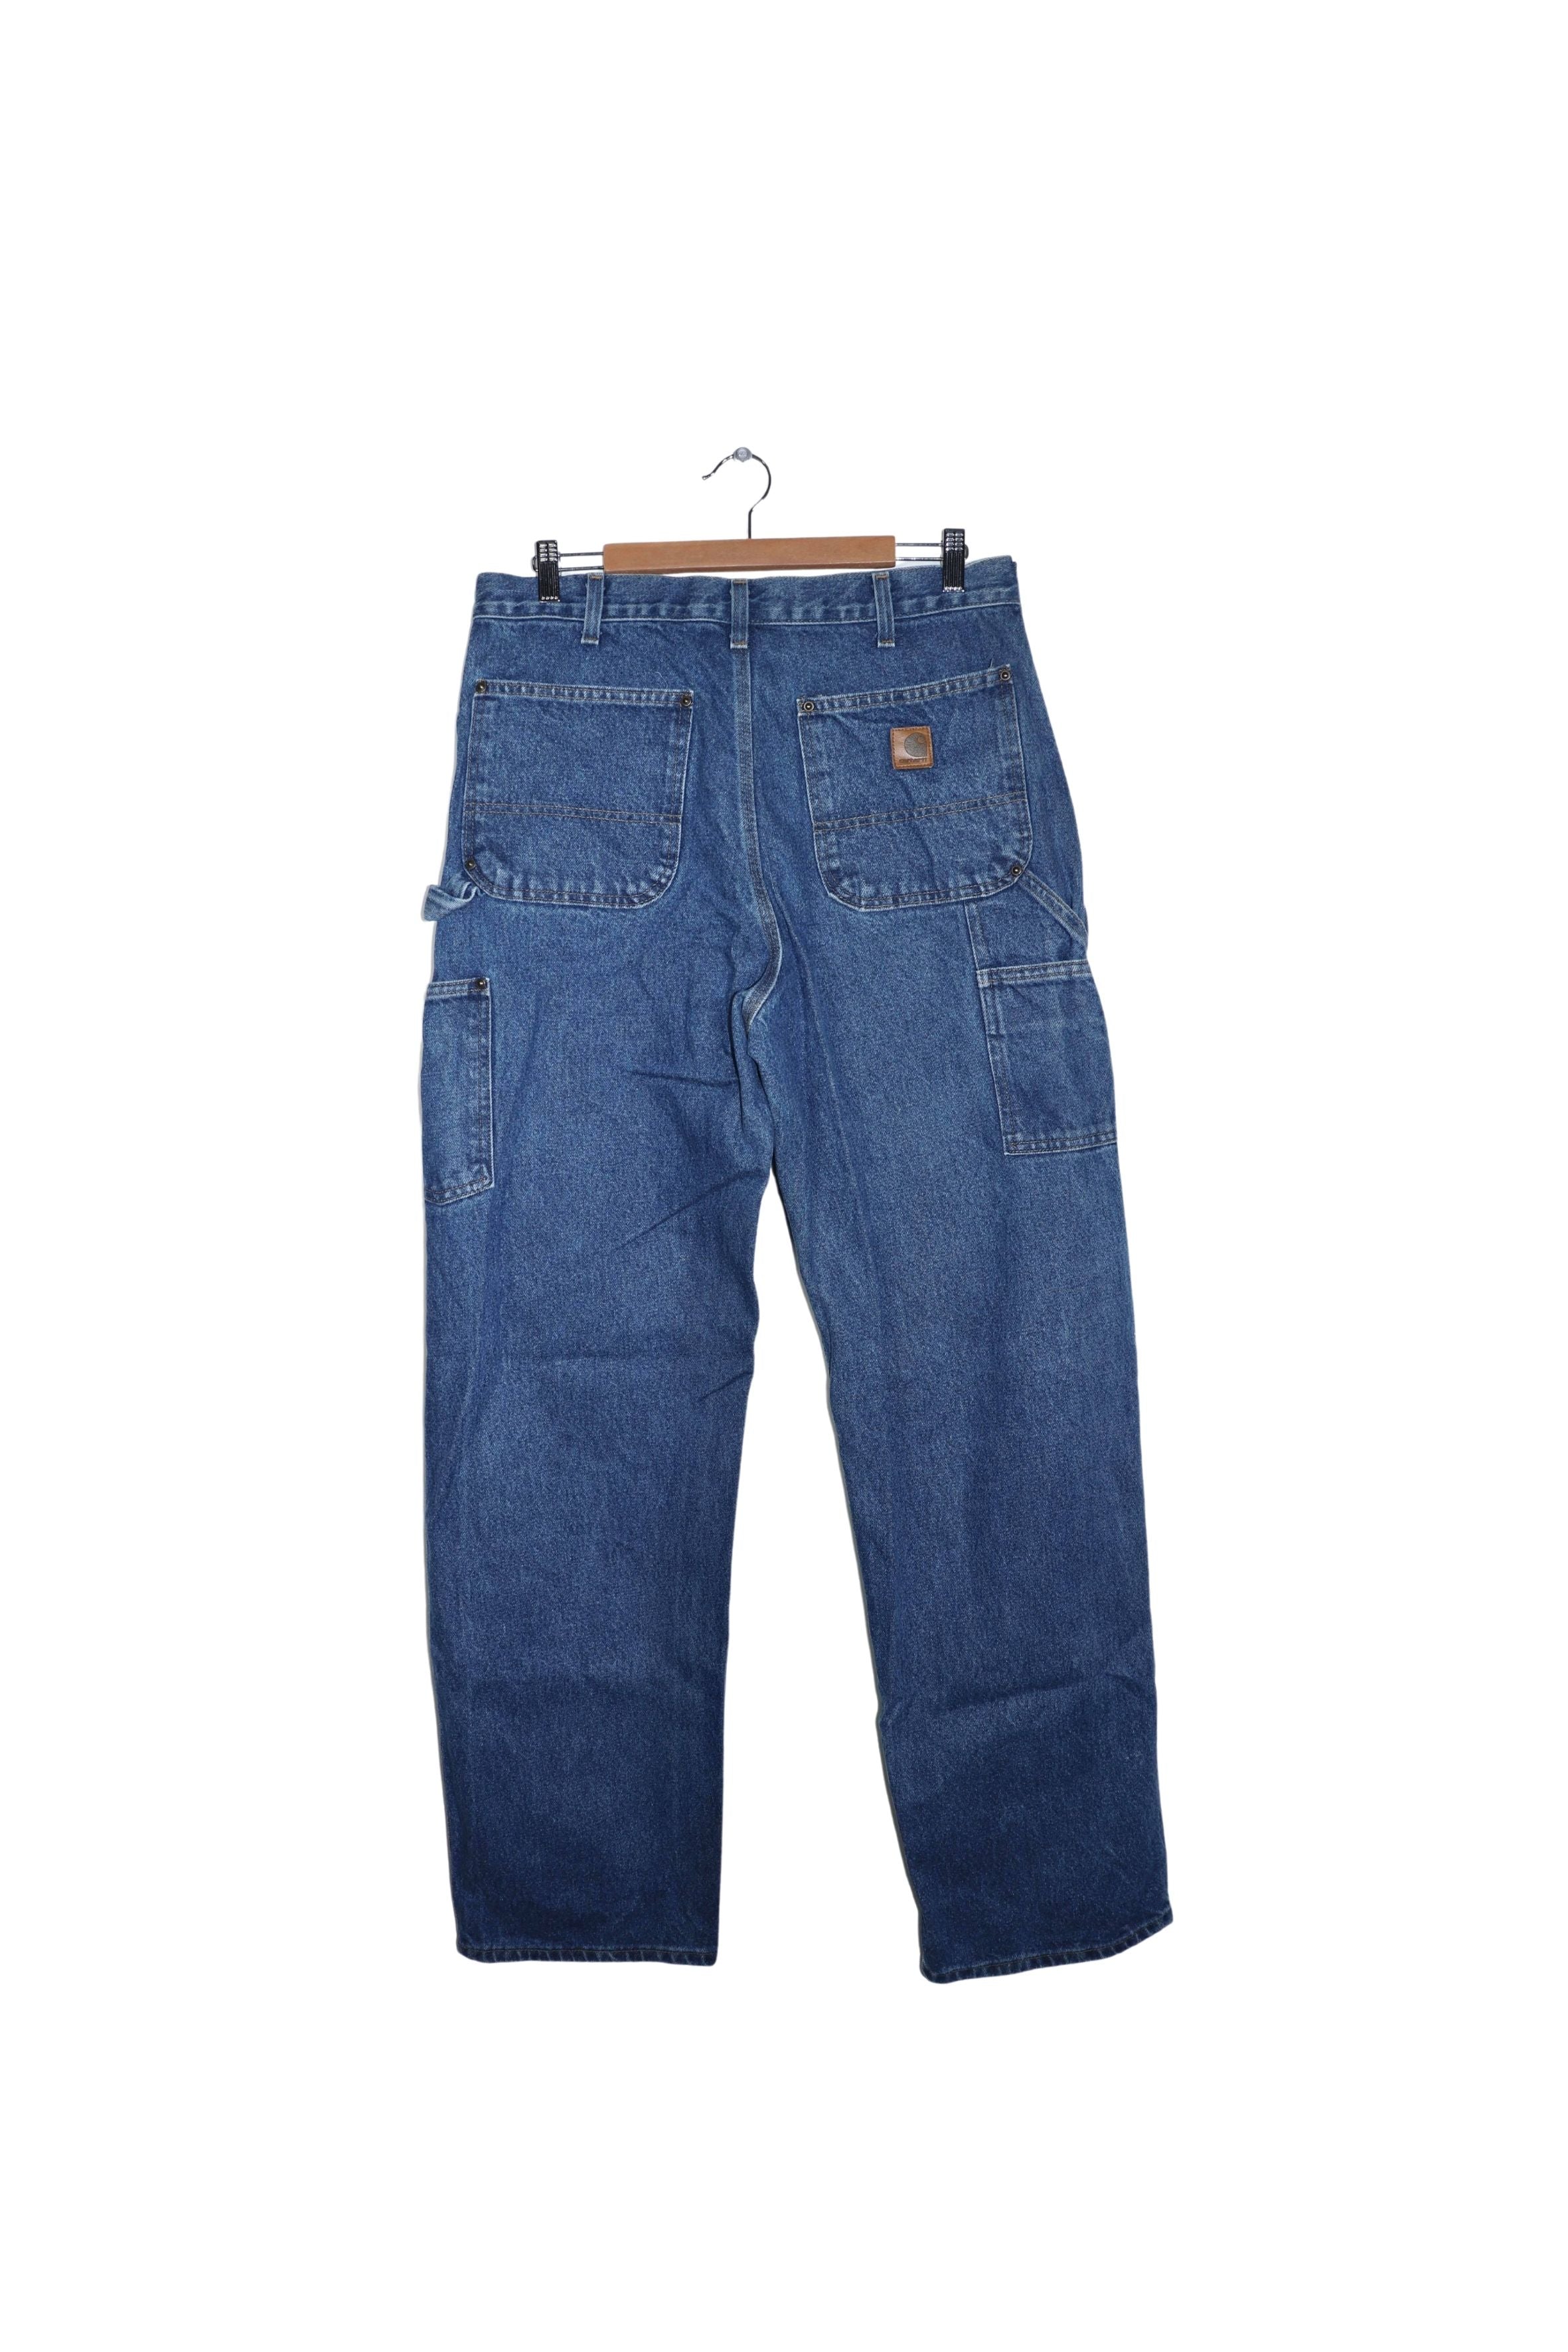 Vintage Carhartt Double Knee Thick Denim Carpenter Pants Size: 34 X 34